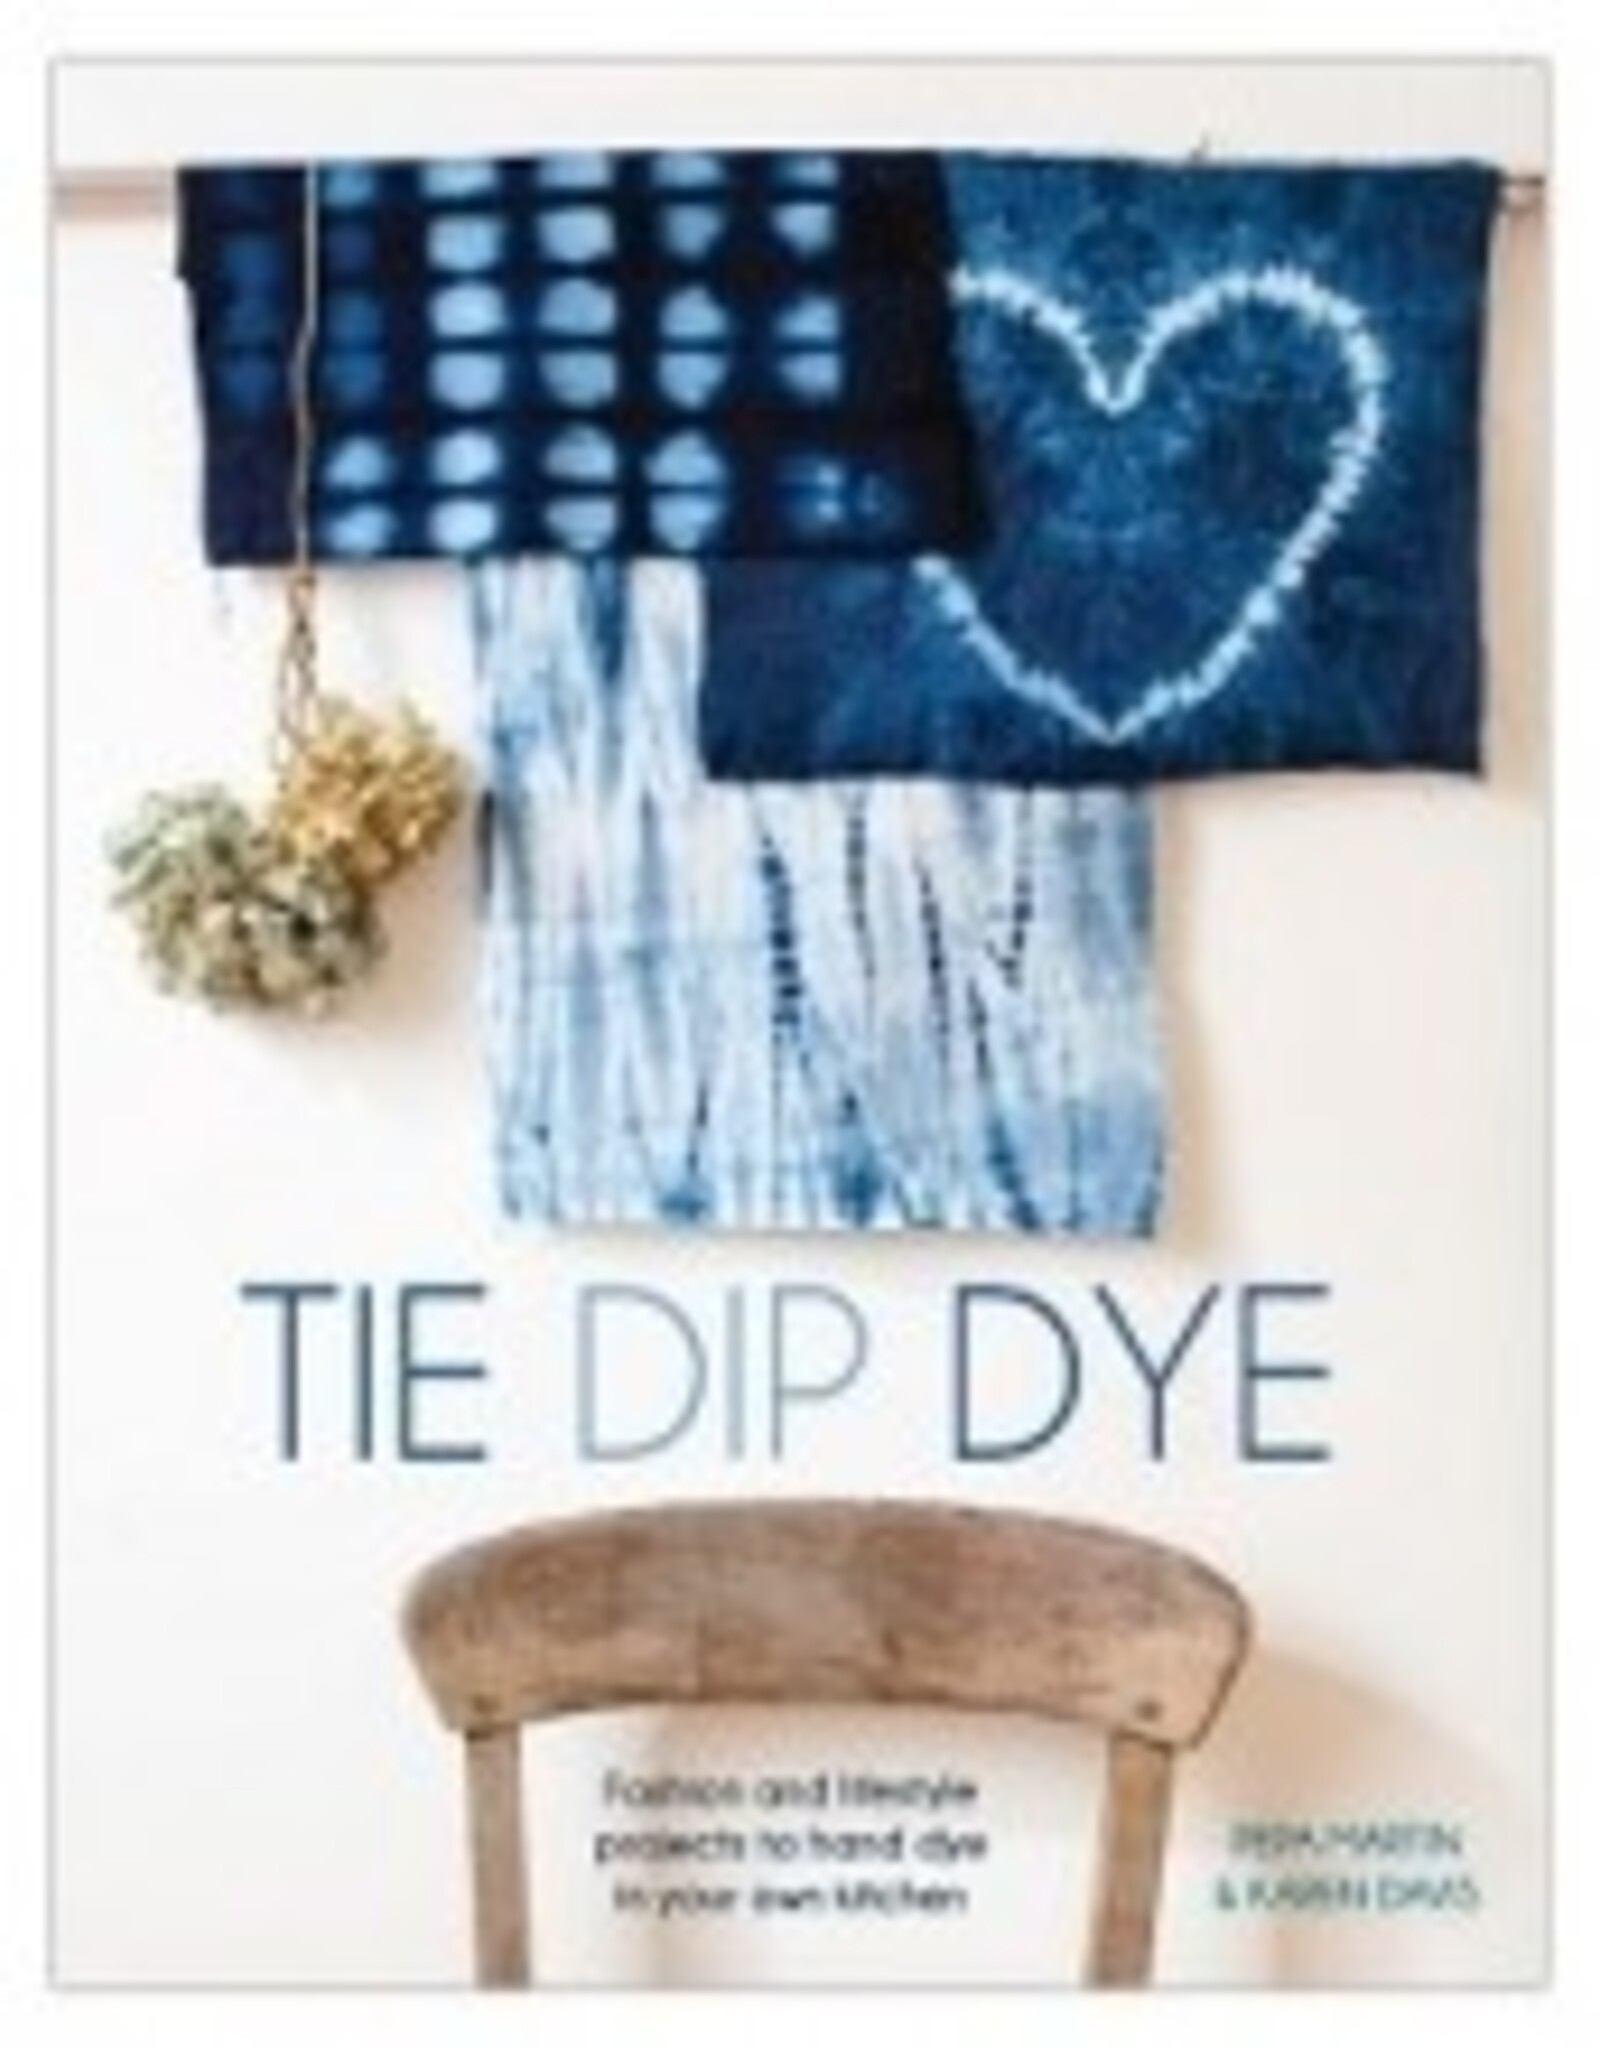 Tie Dip Dye